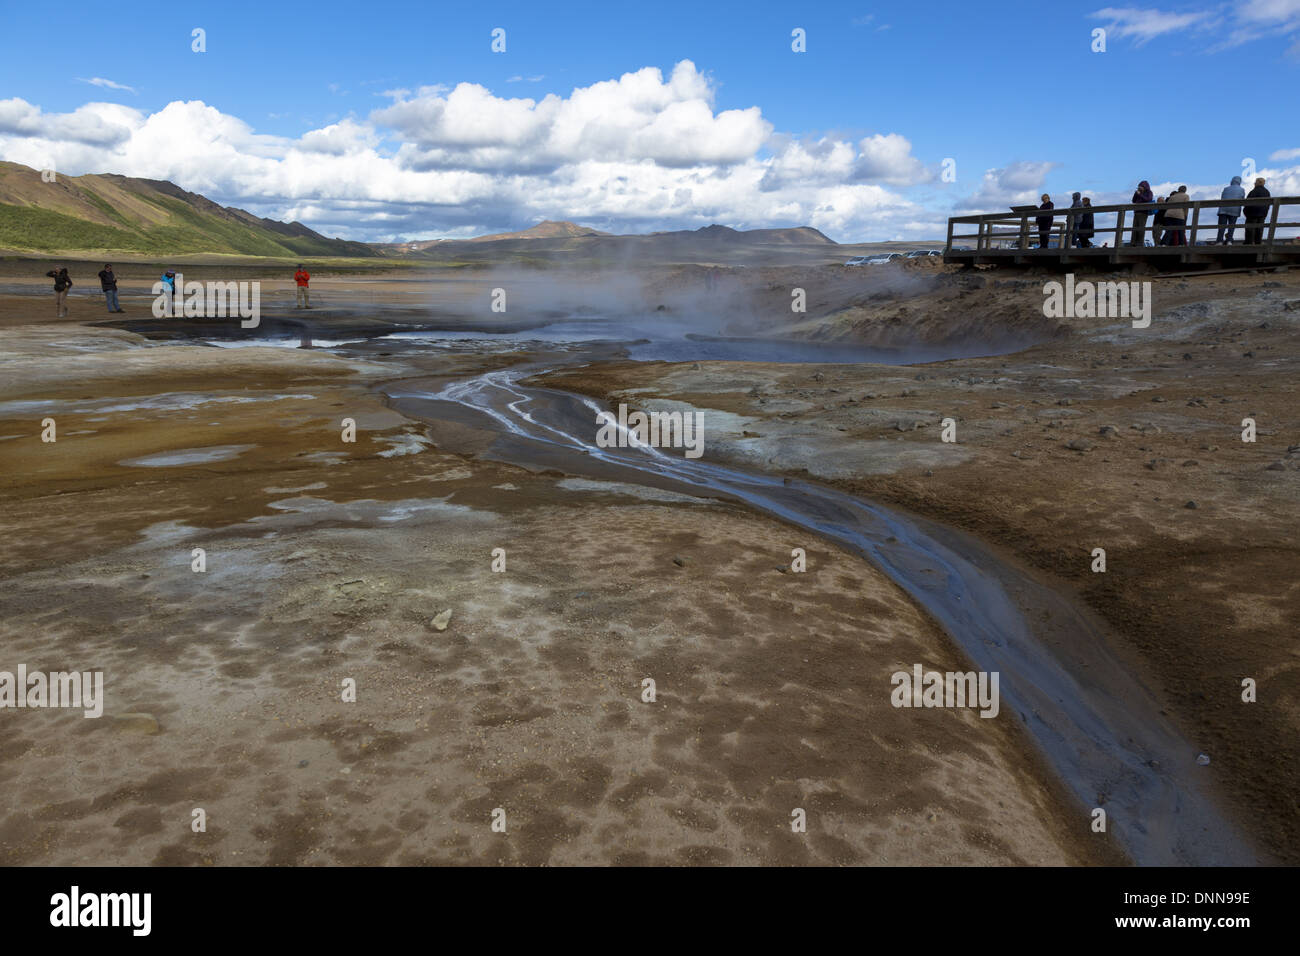 Island Touristen am Namafjall Geothermie hot spring Bereich Prüfung der dampfenden und blubbernden Pools Stockfoto